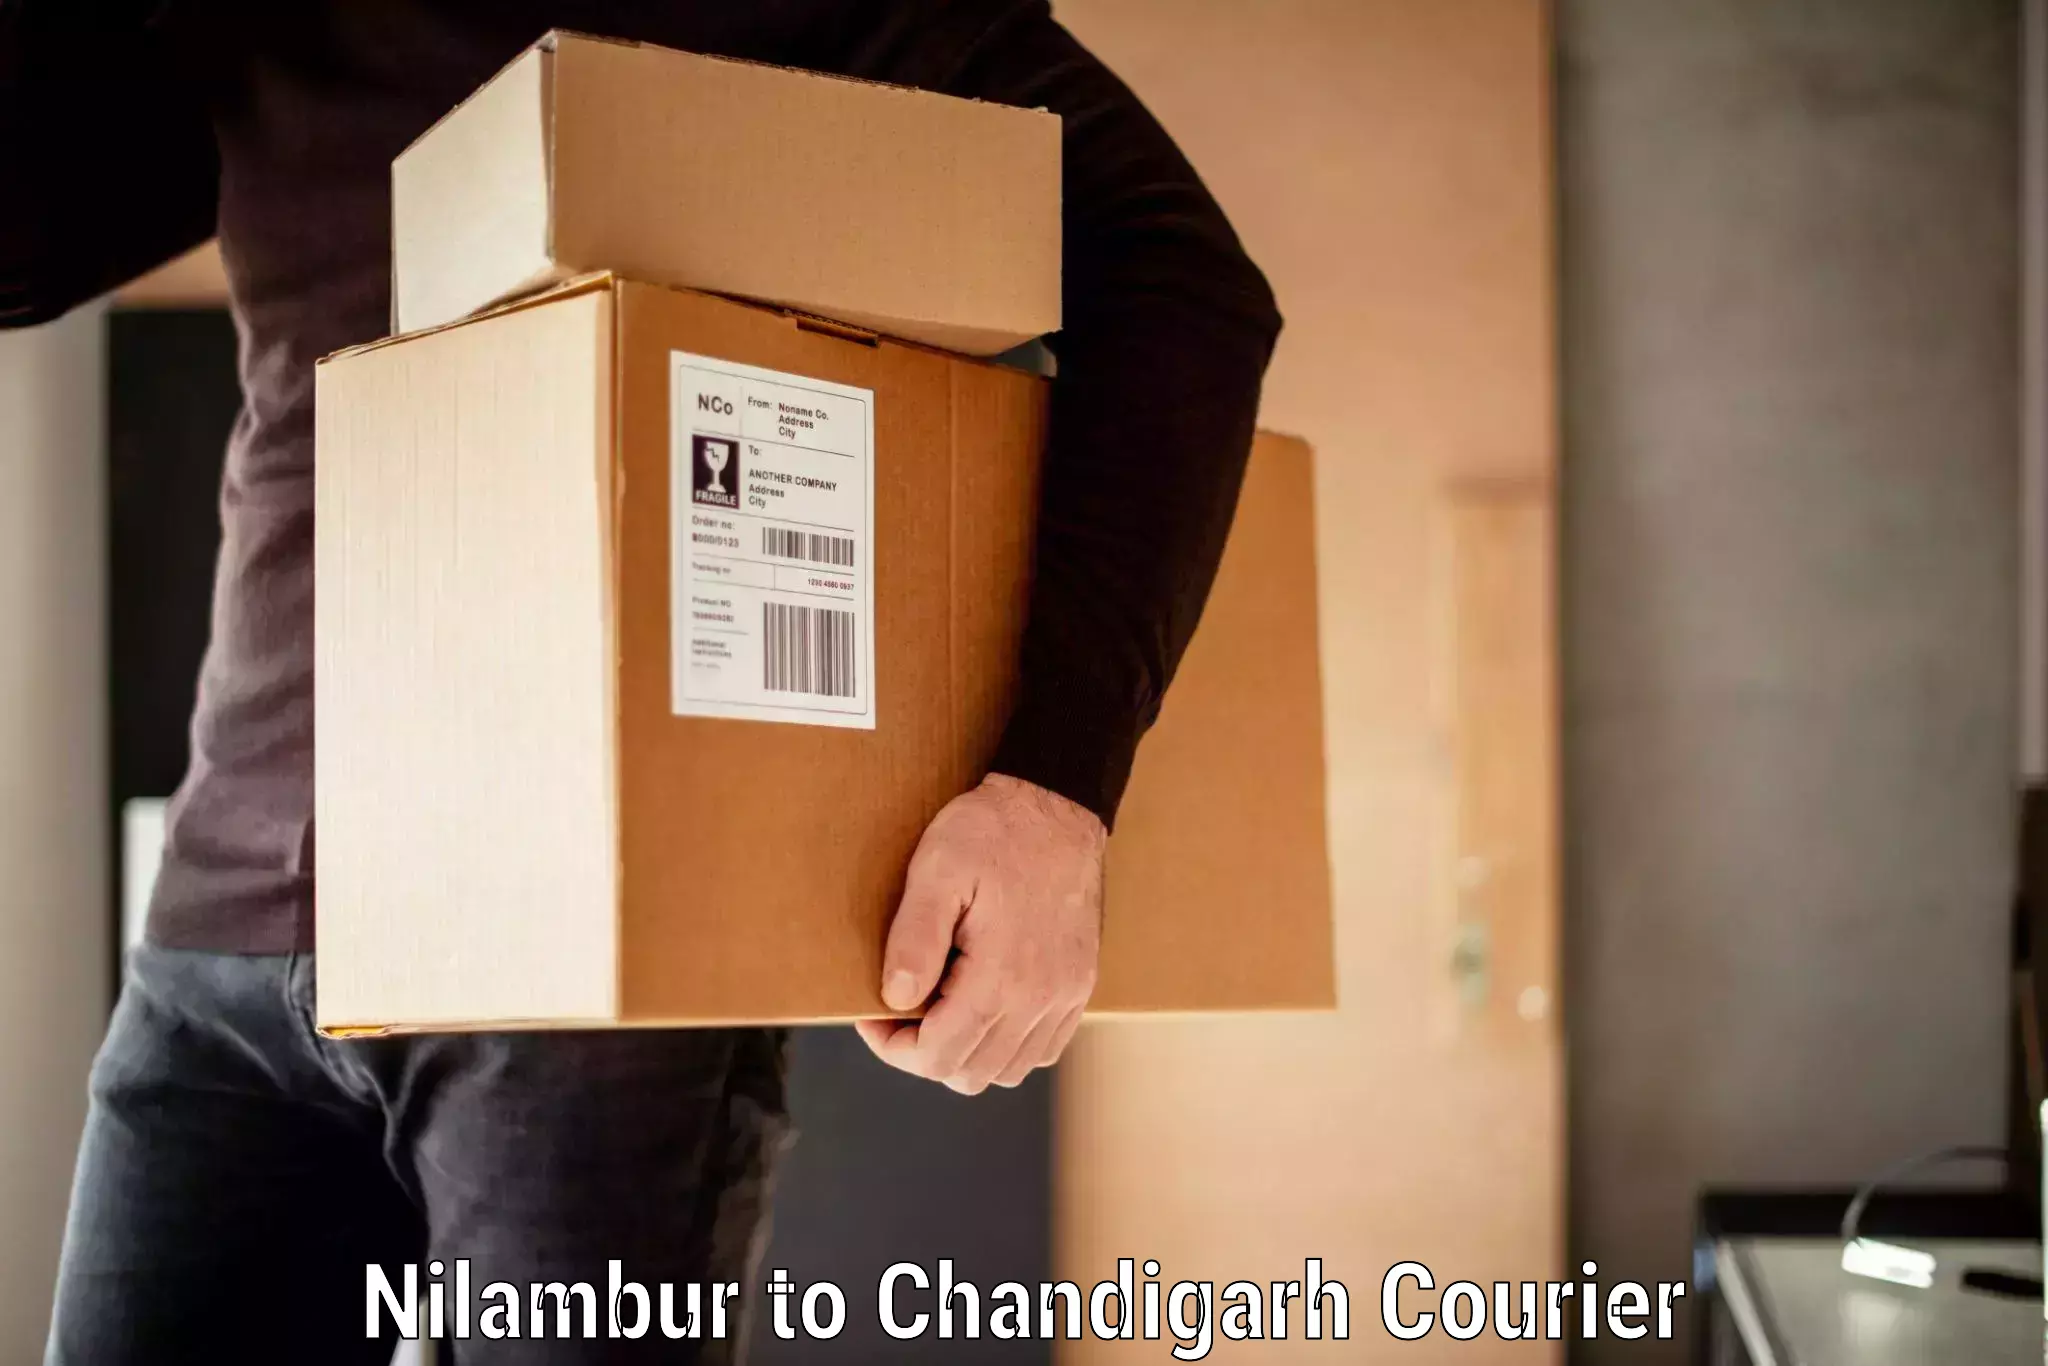 Baggage transport scheduler Nilambur to Chandigarh